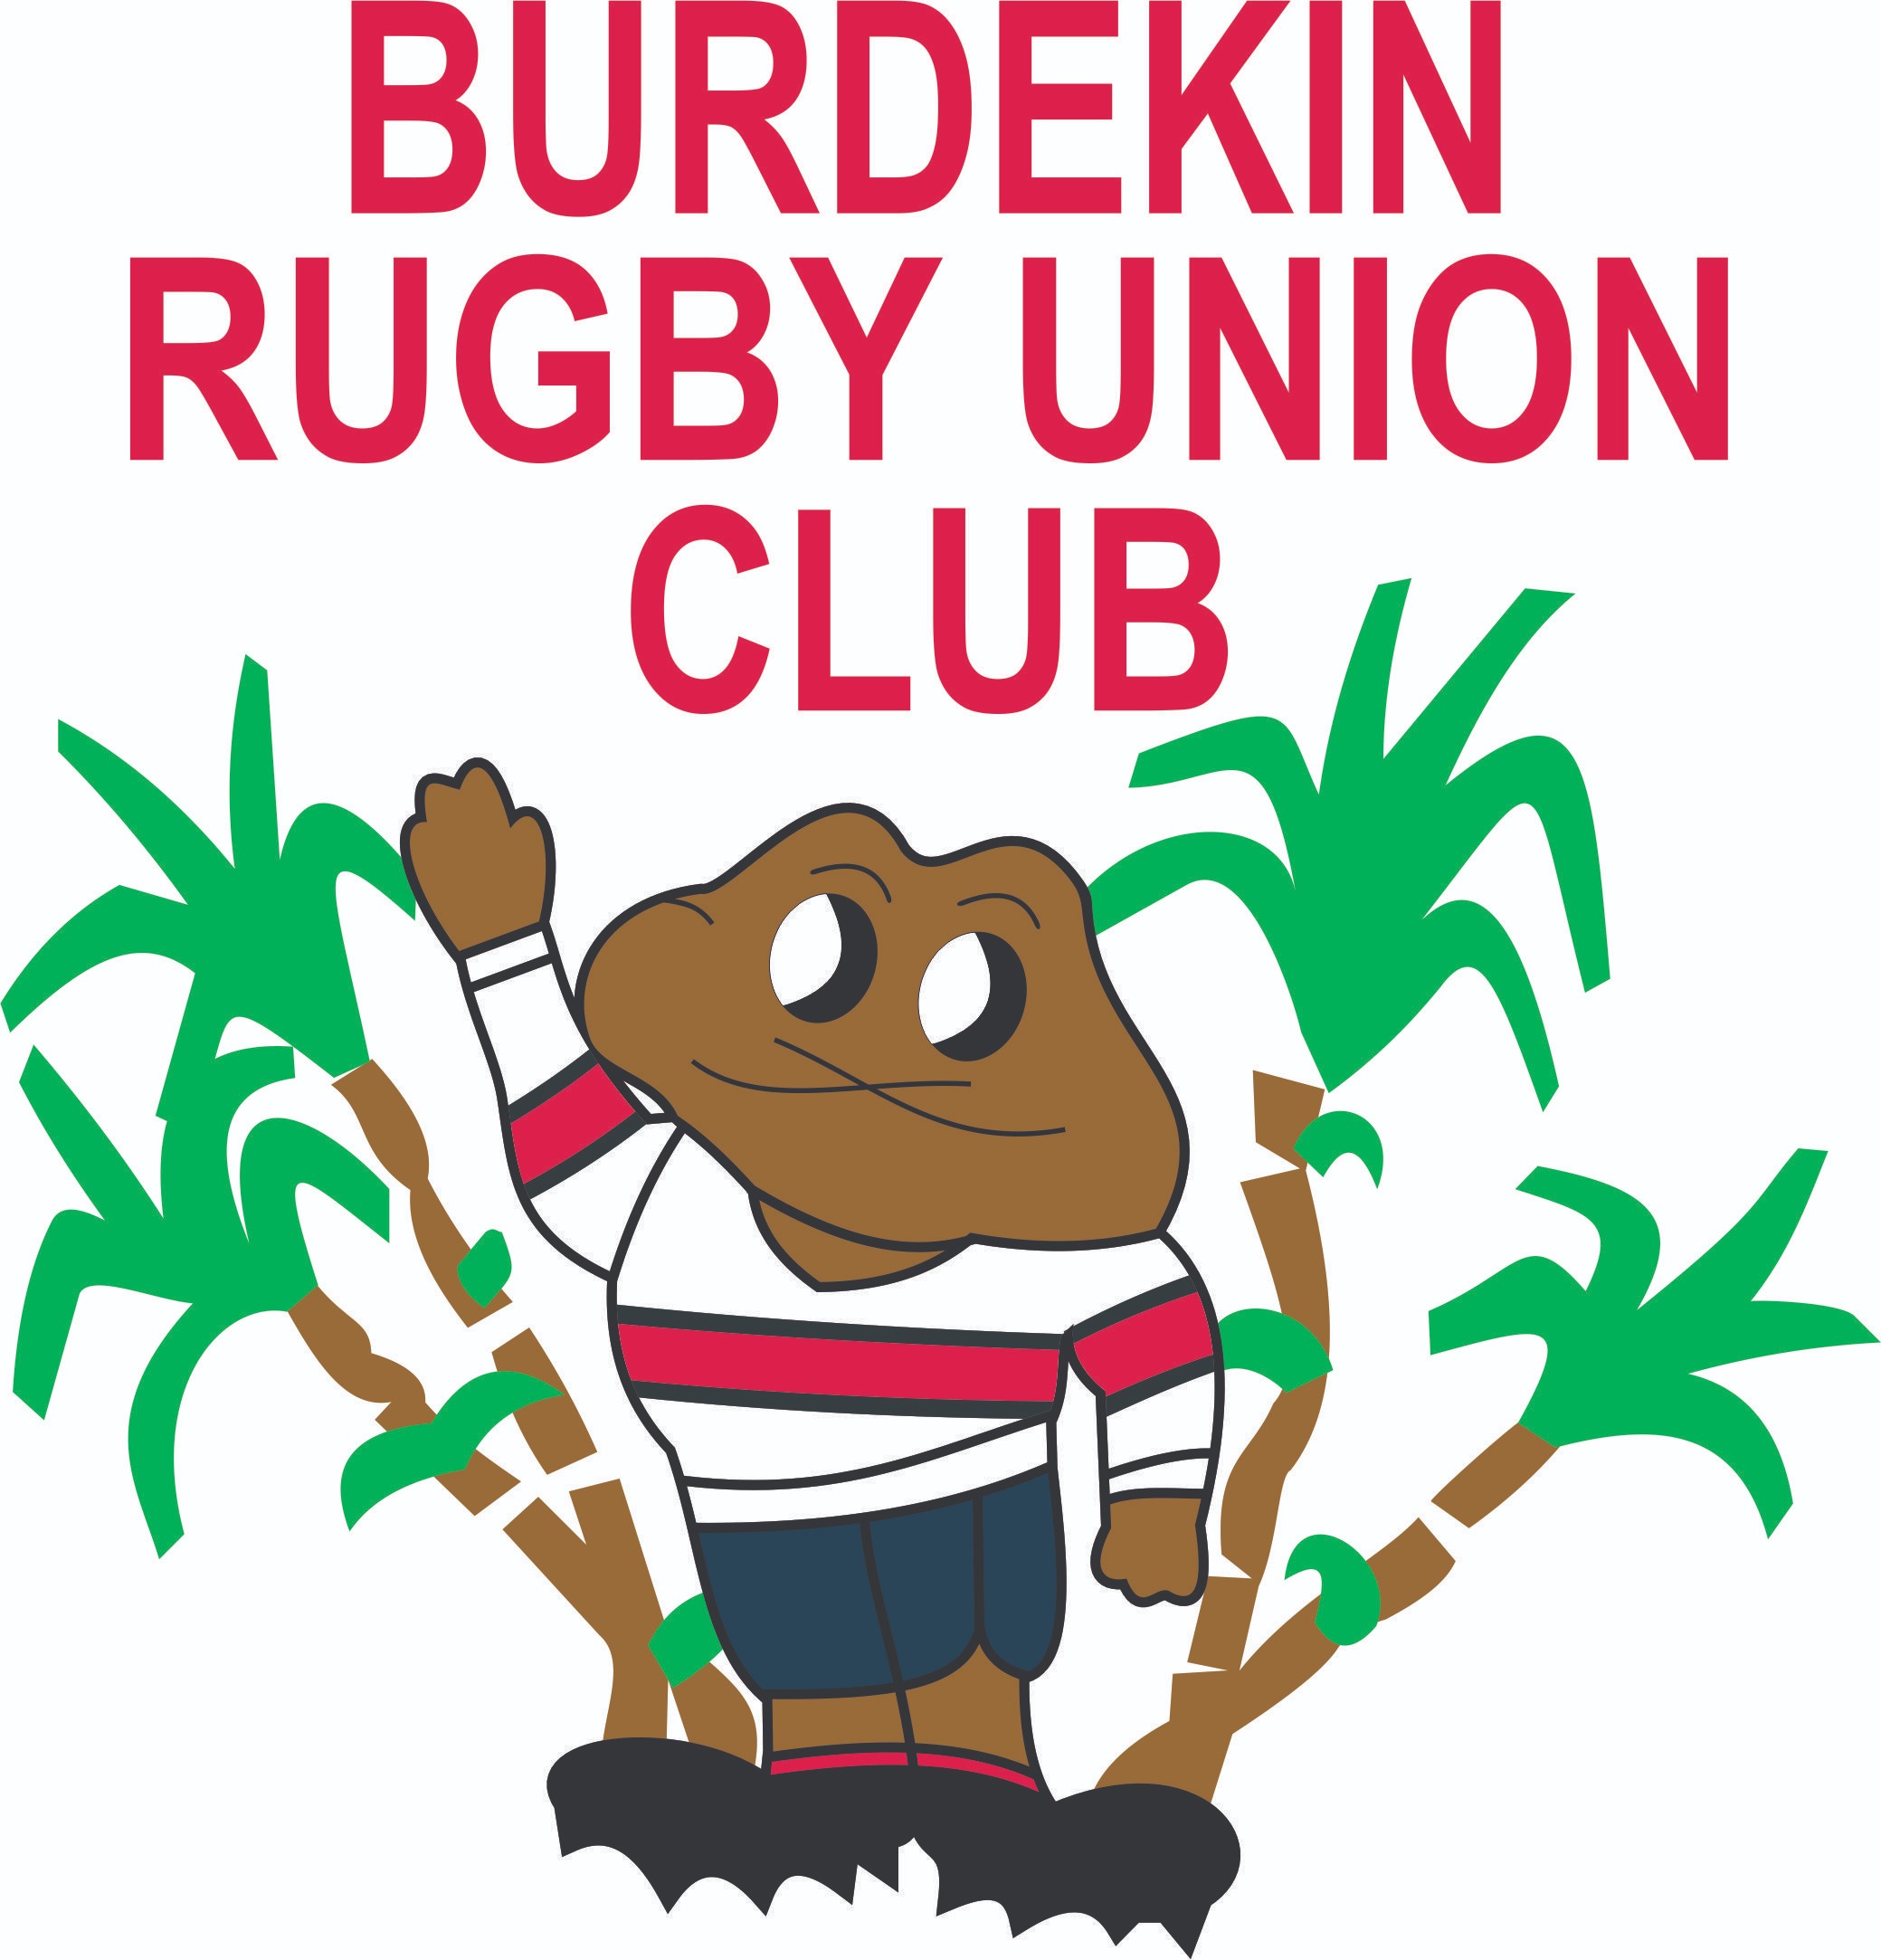 2022 Burdekin Rugby Union Club Presentation of Trophies Tickets ...